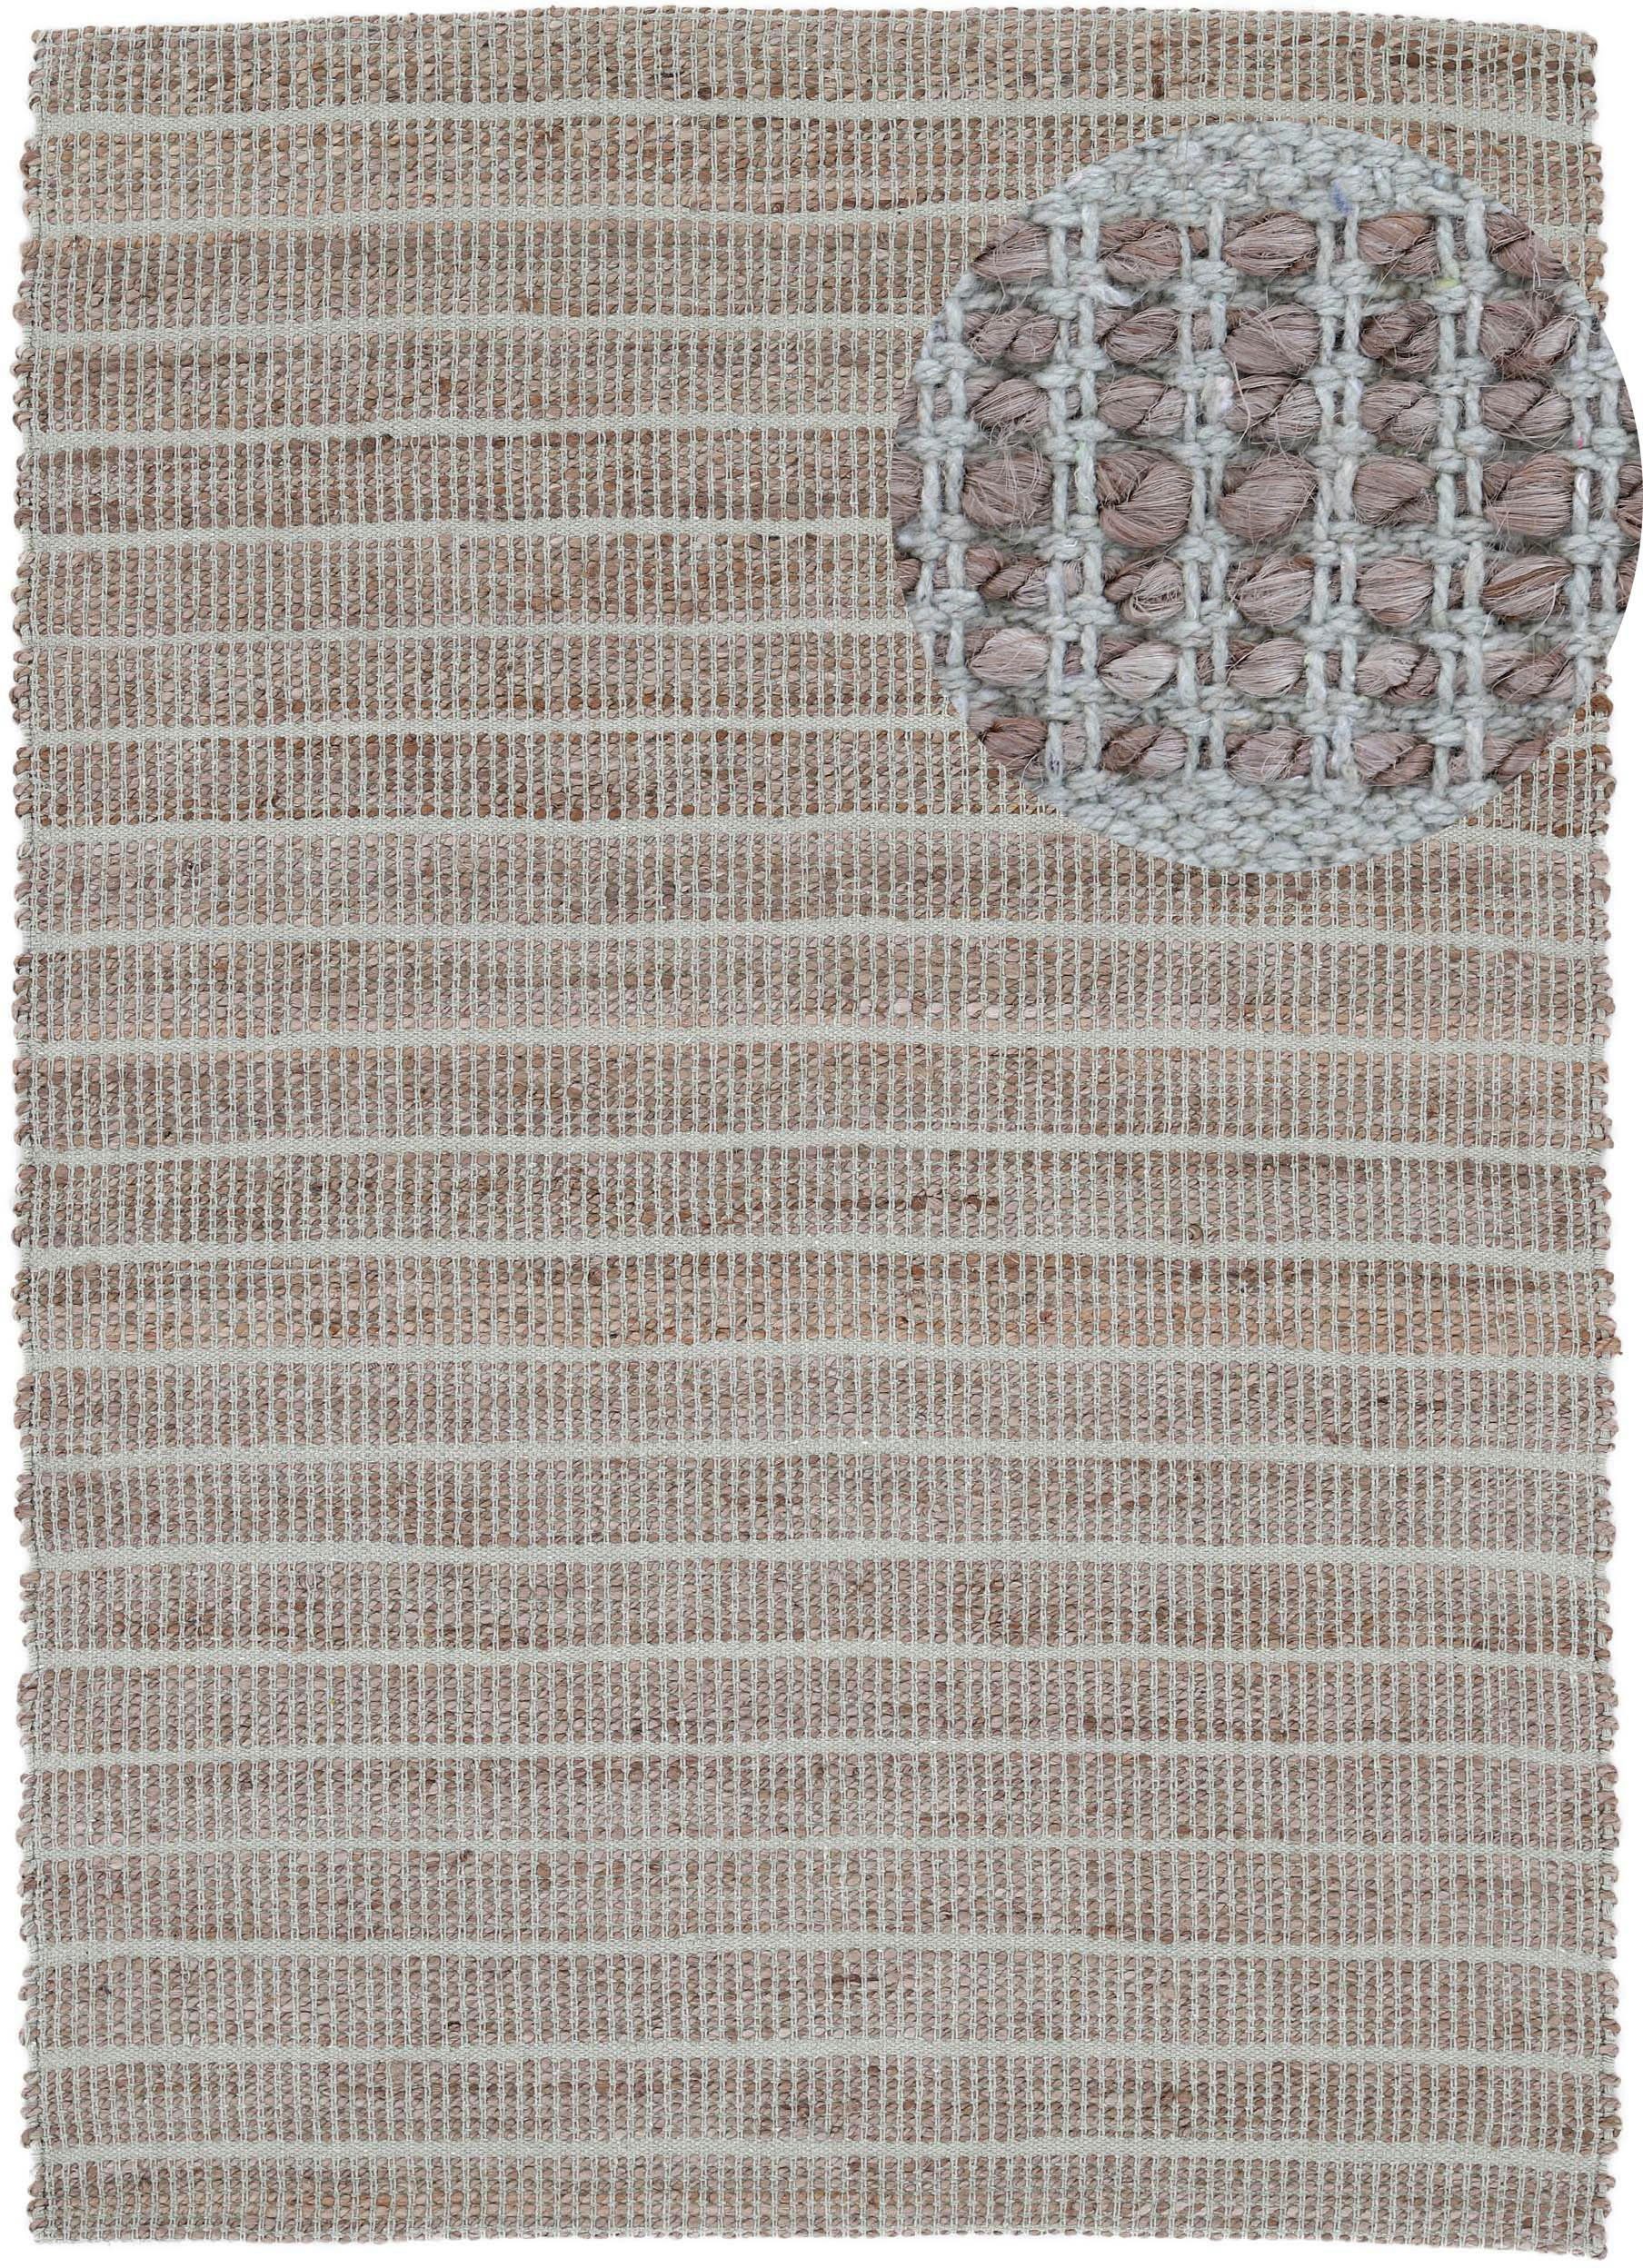 Teppich Lara, carpetfine, rechteckig, Höhe: 6 mm, Wendeteppich aus Jute/Baumwolle, Wohnzimmer